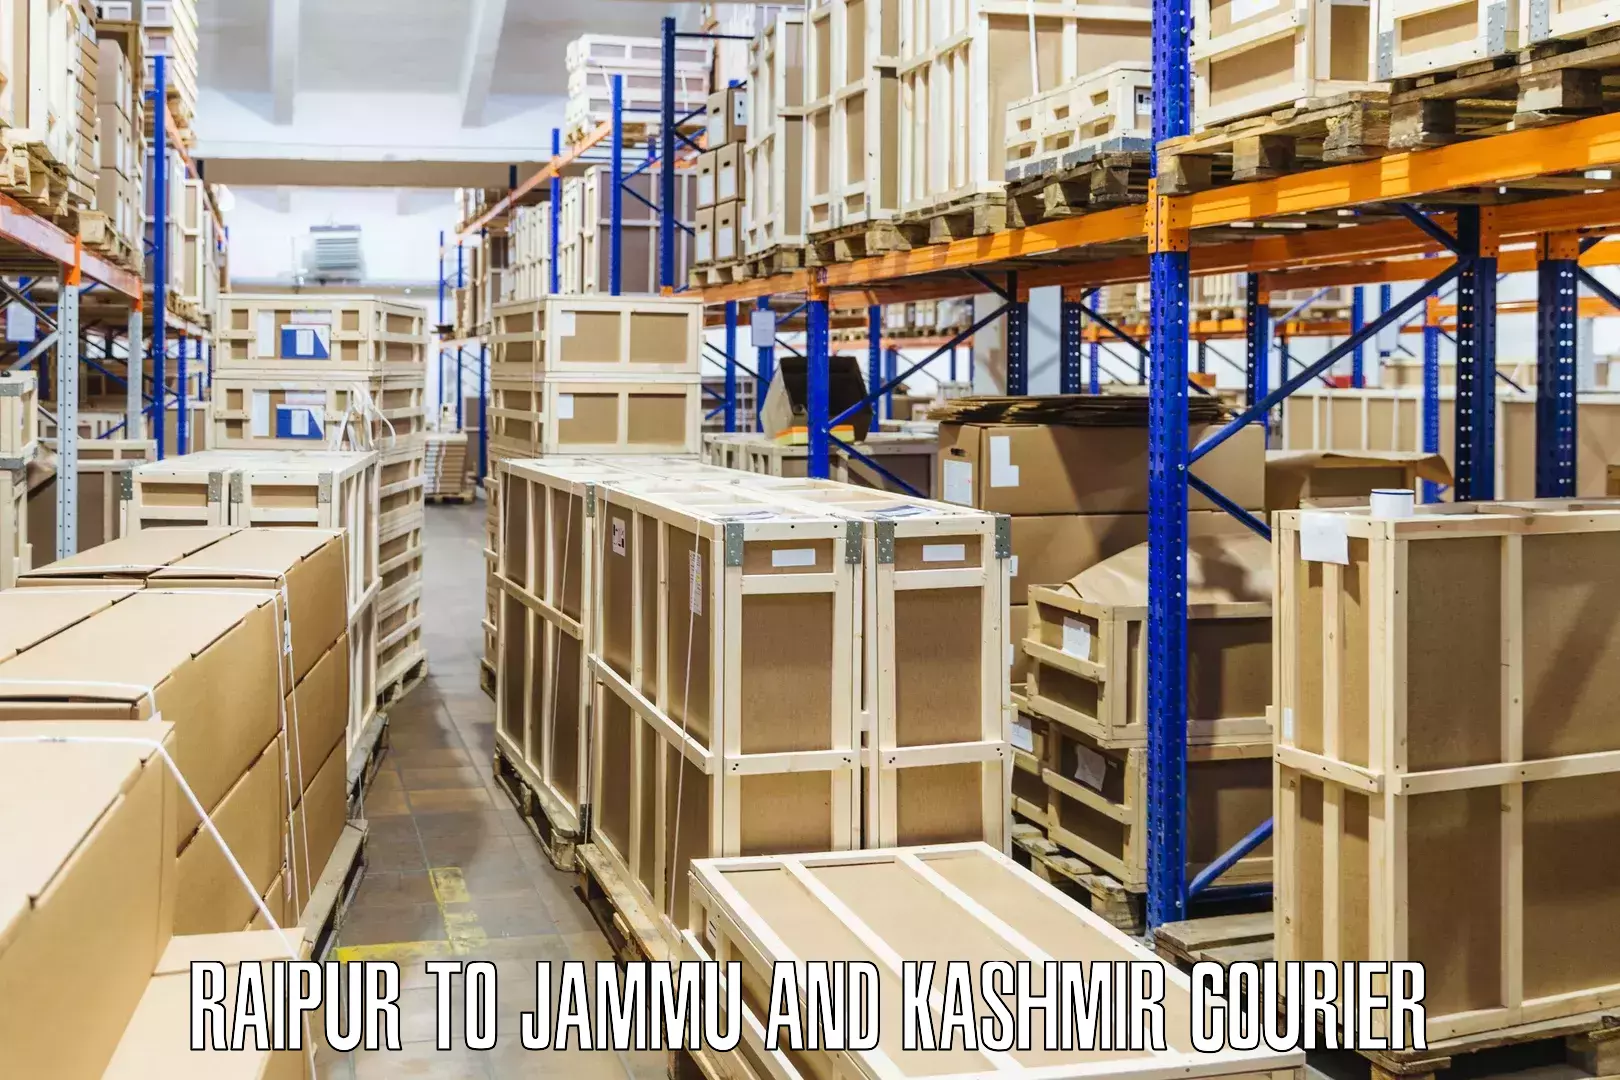 High-priority parcel service Raipur to IIT Jammu